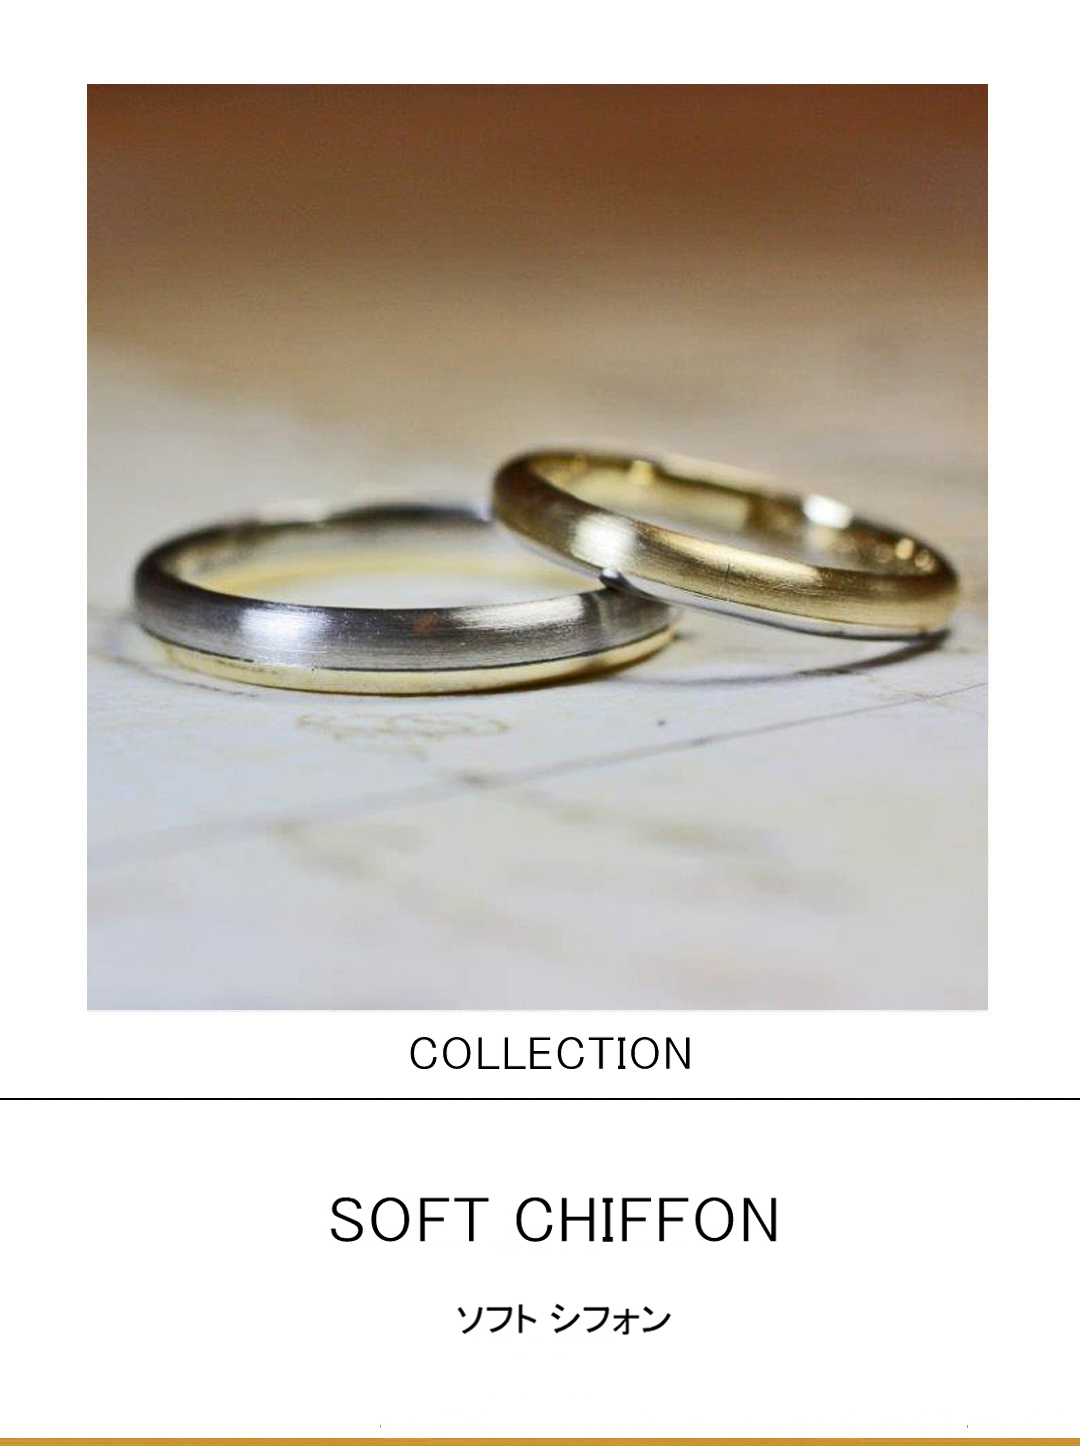 ゴールド＆グレーを２：１で組み合わせた丸いフォルムの結婚指輪のサムネイル